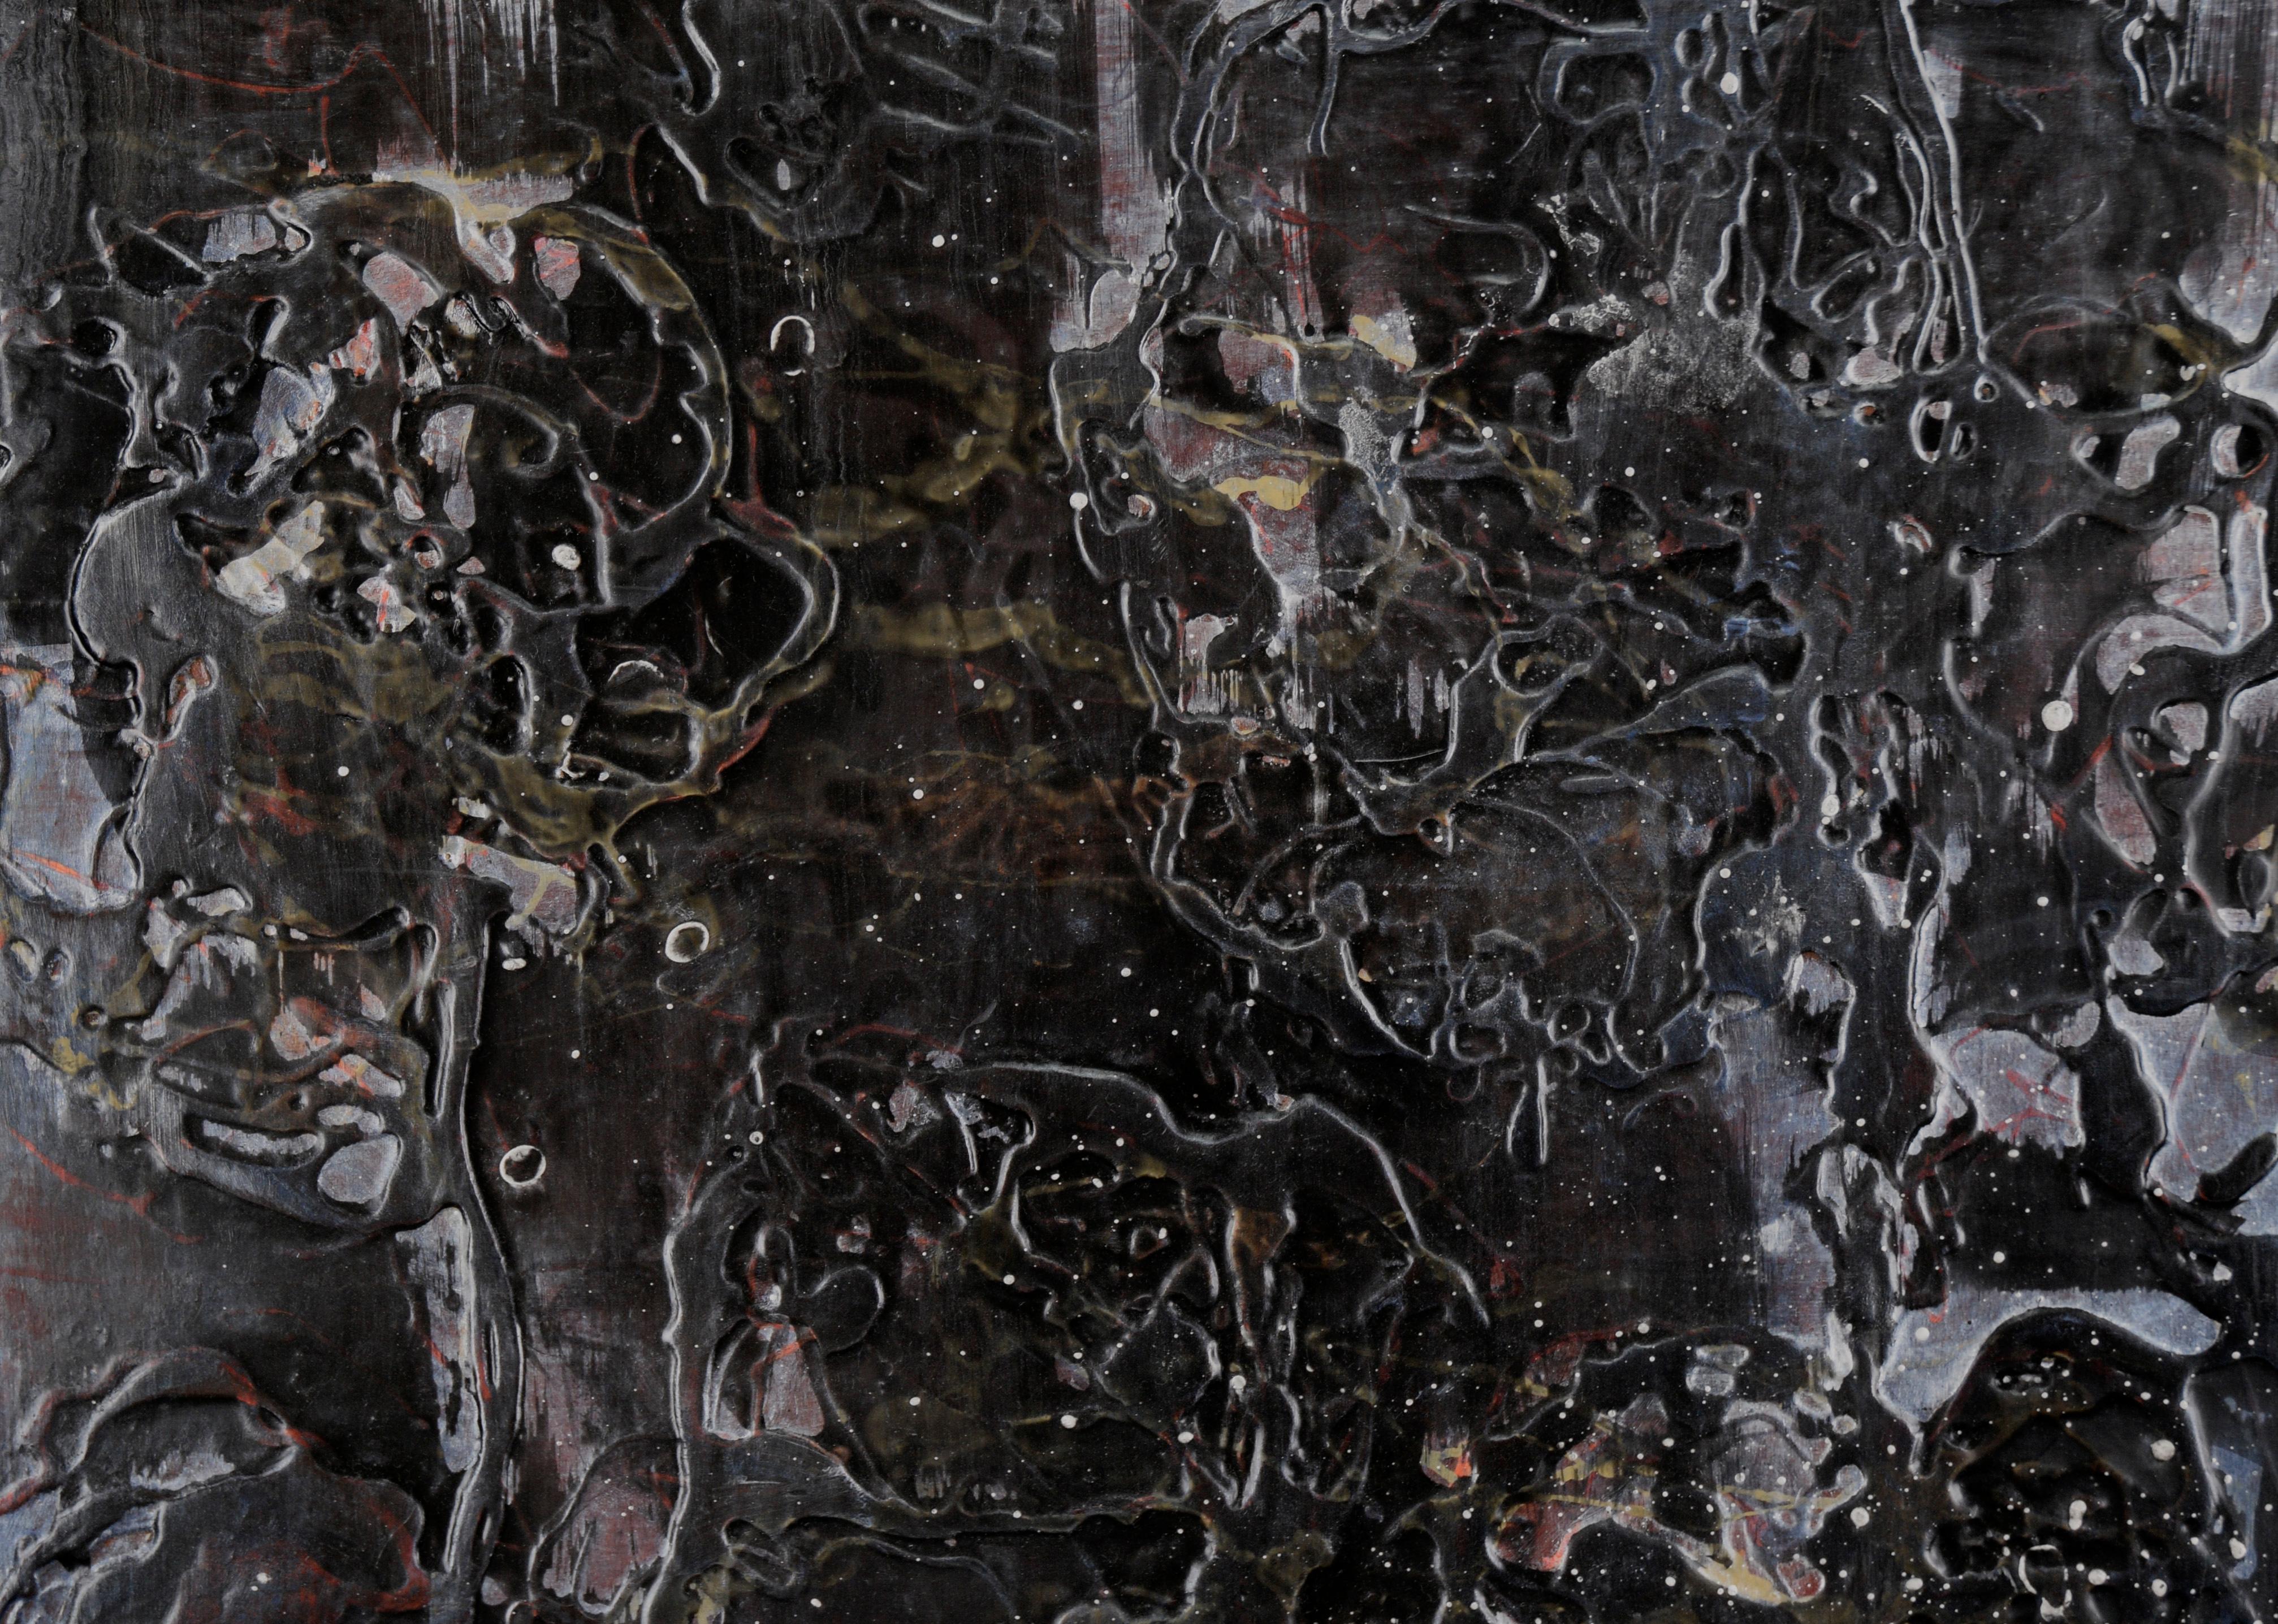 « Fantômes » - Composition abstraite à l'acrylique, à l'huile et à l'encre sur panneau de bois torsadé

Composition abstraite dramatique de Michele King (américaine, née en 1962). Cette pièce ressemble à une nébuleuse, avec une texture